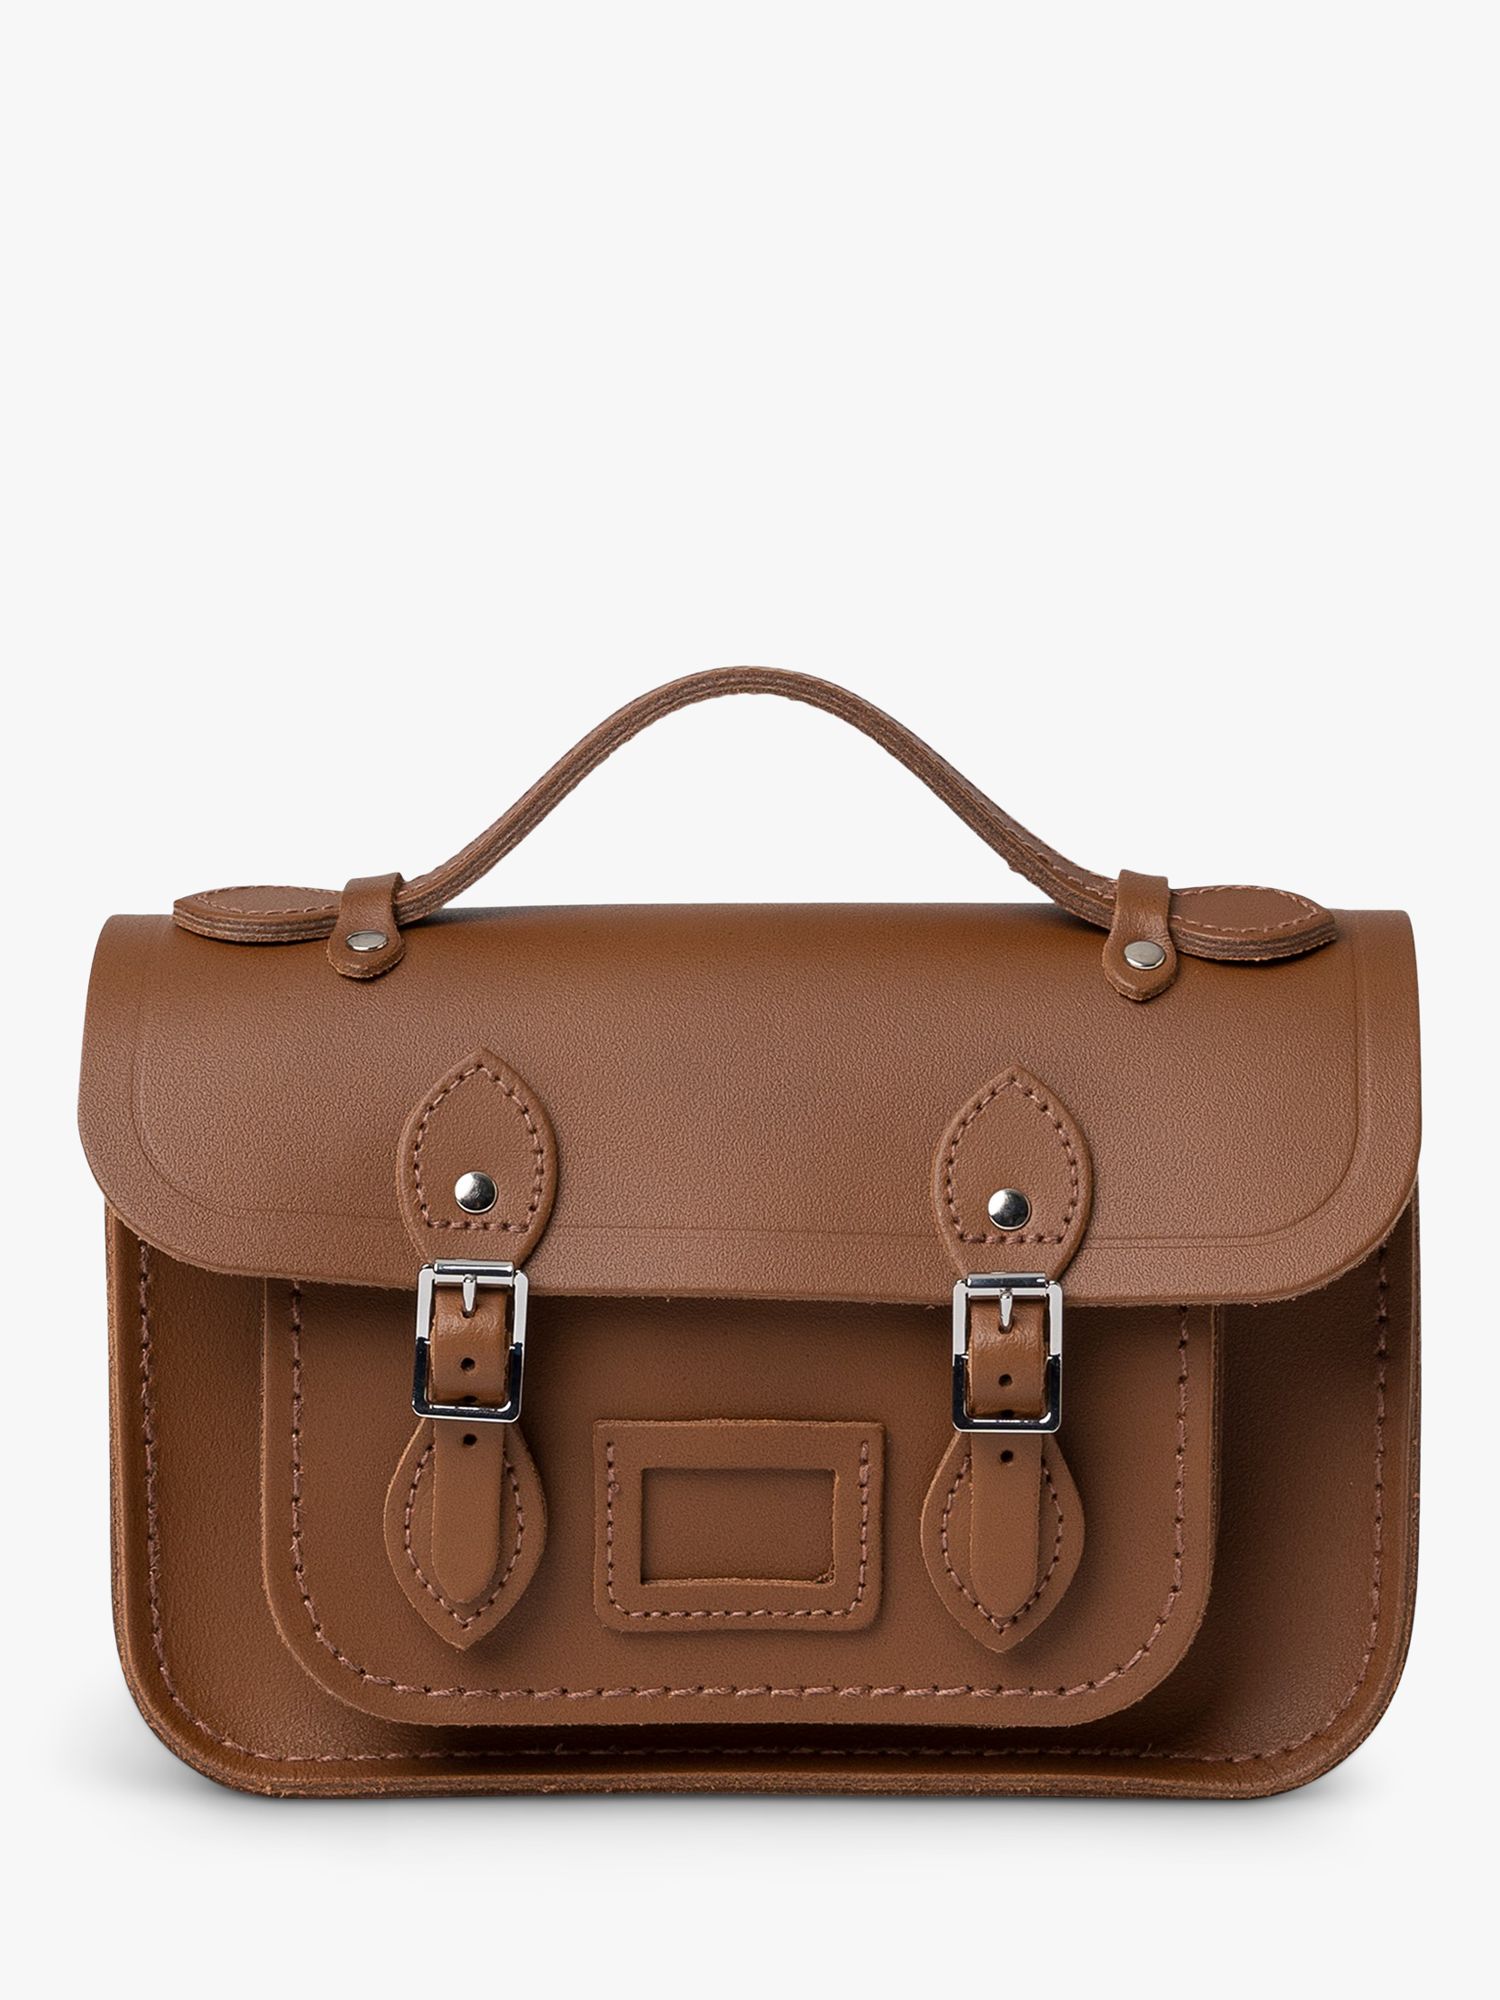 Cambridge Satchel Мини-кожаная сумка The Cambridge Satchel Company, винтаж satchel the family 180g